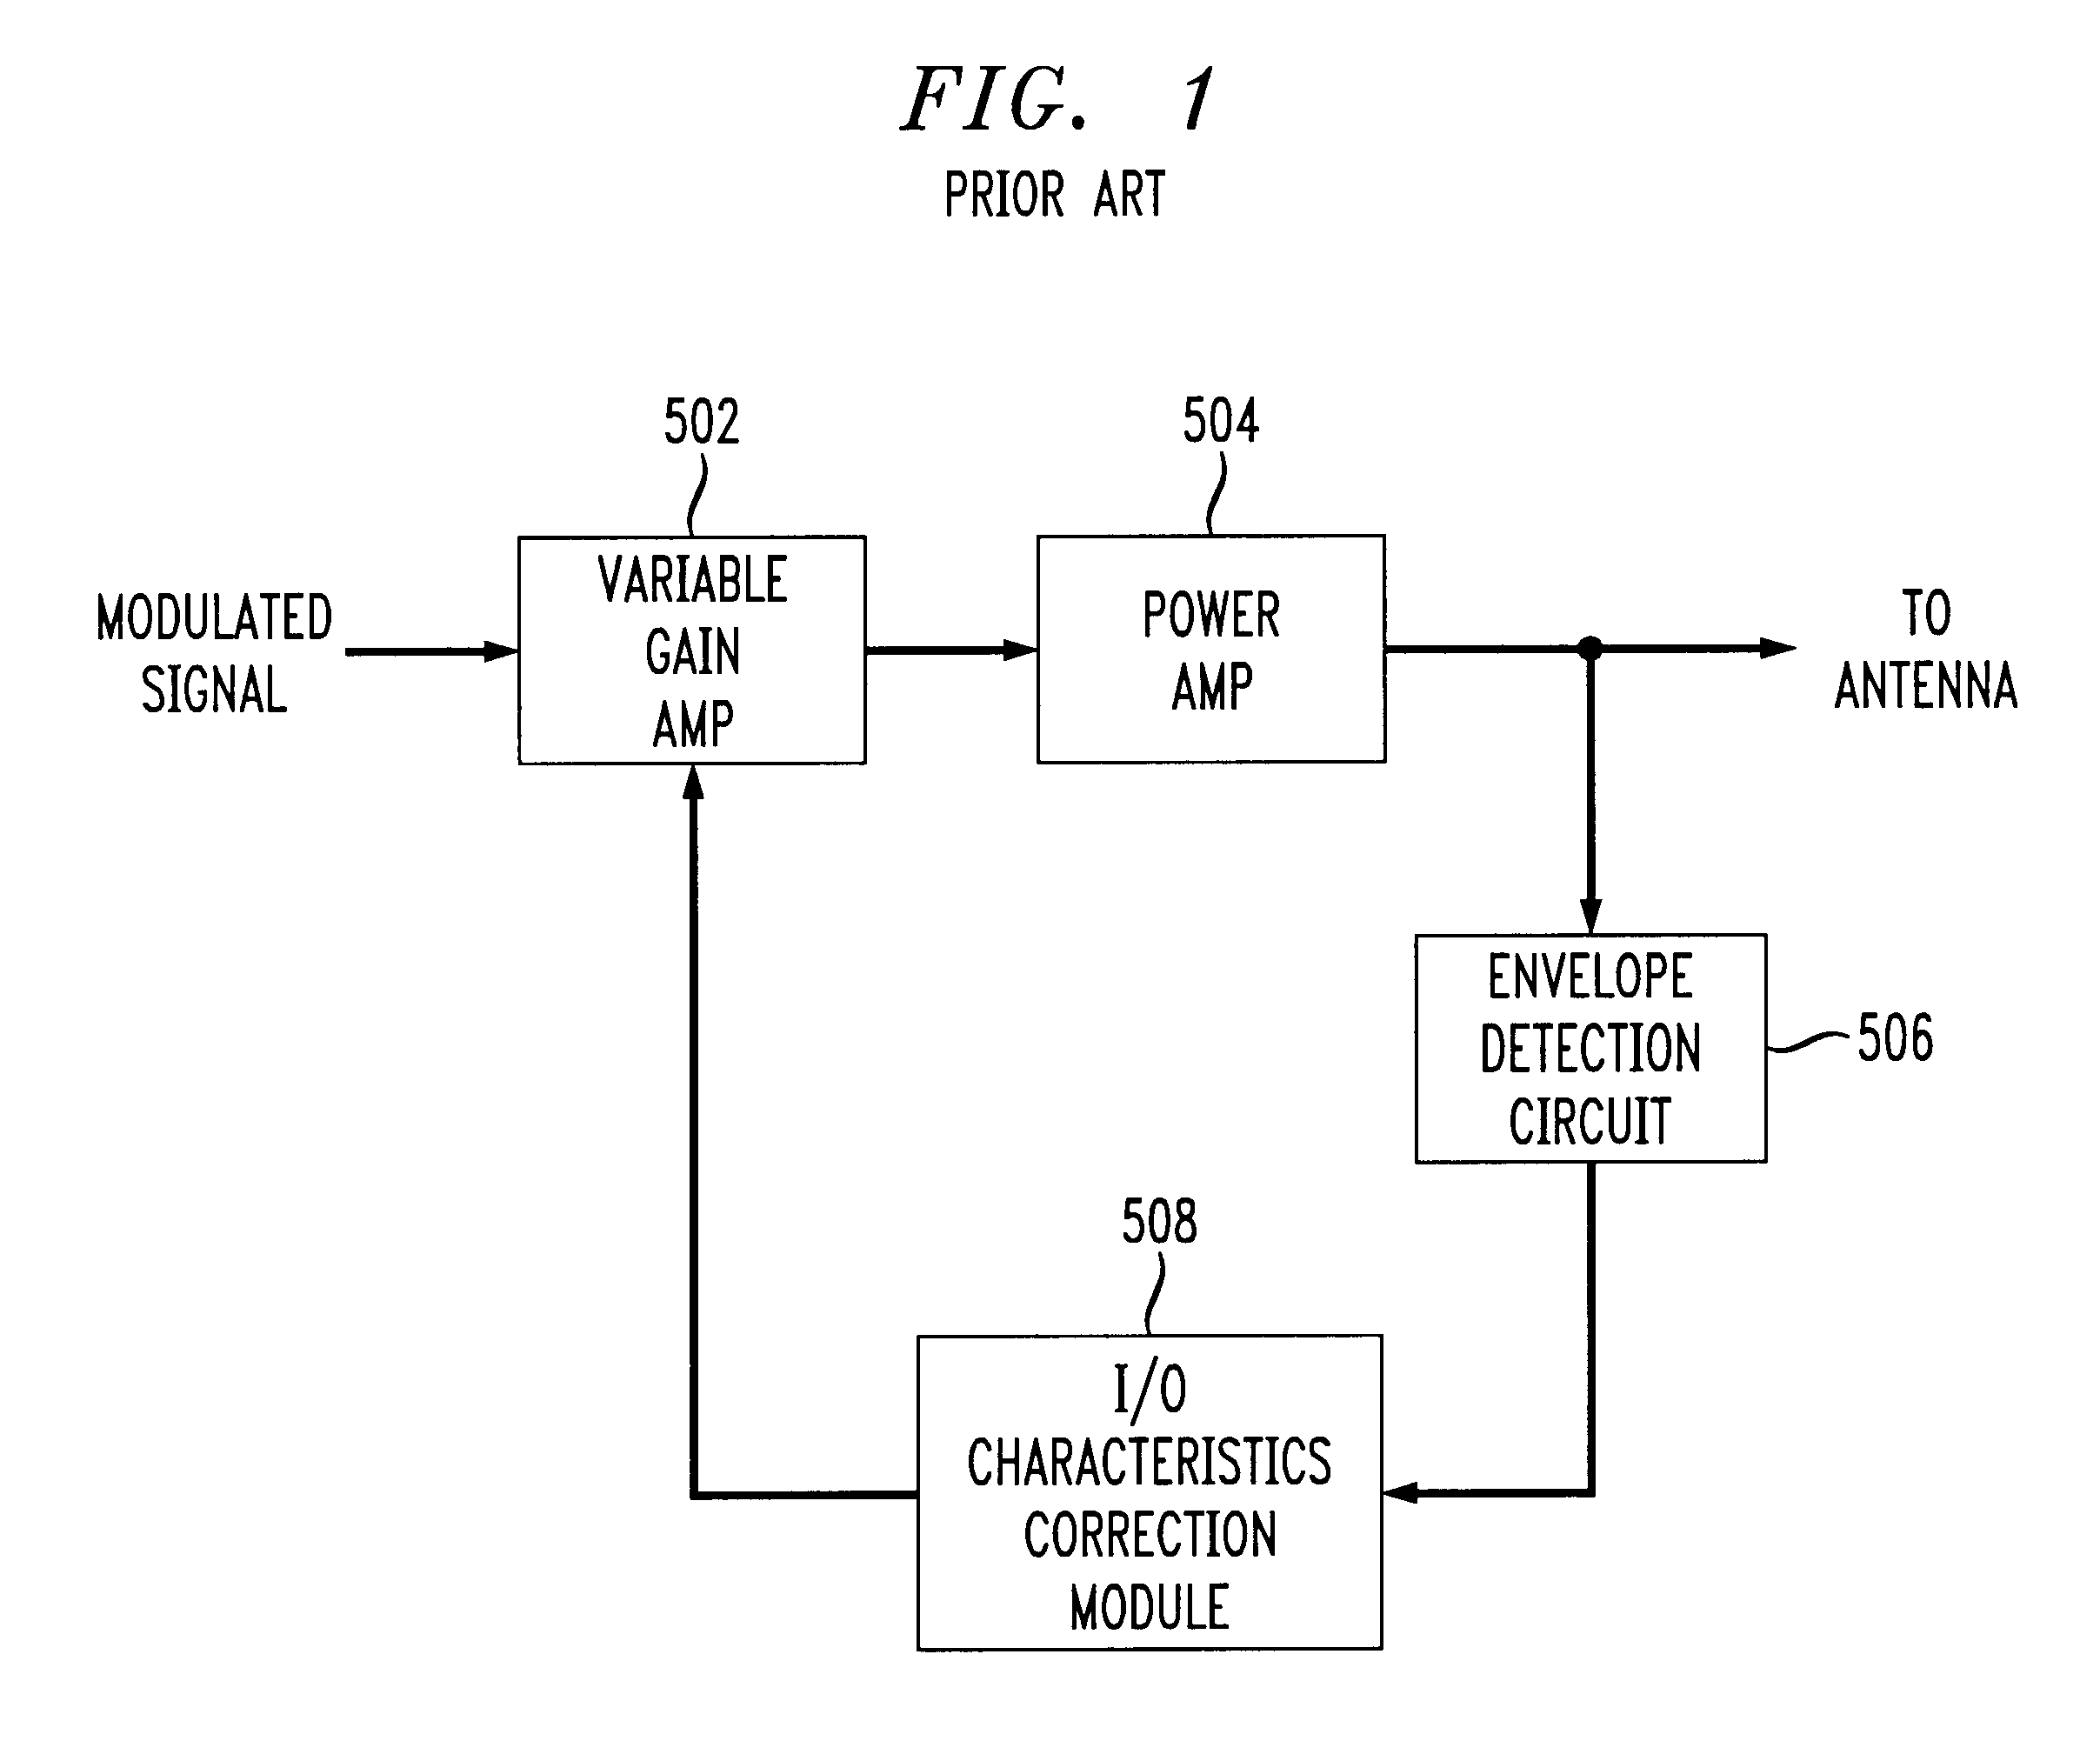 Linearization of power amplifier